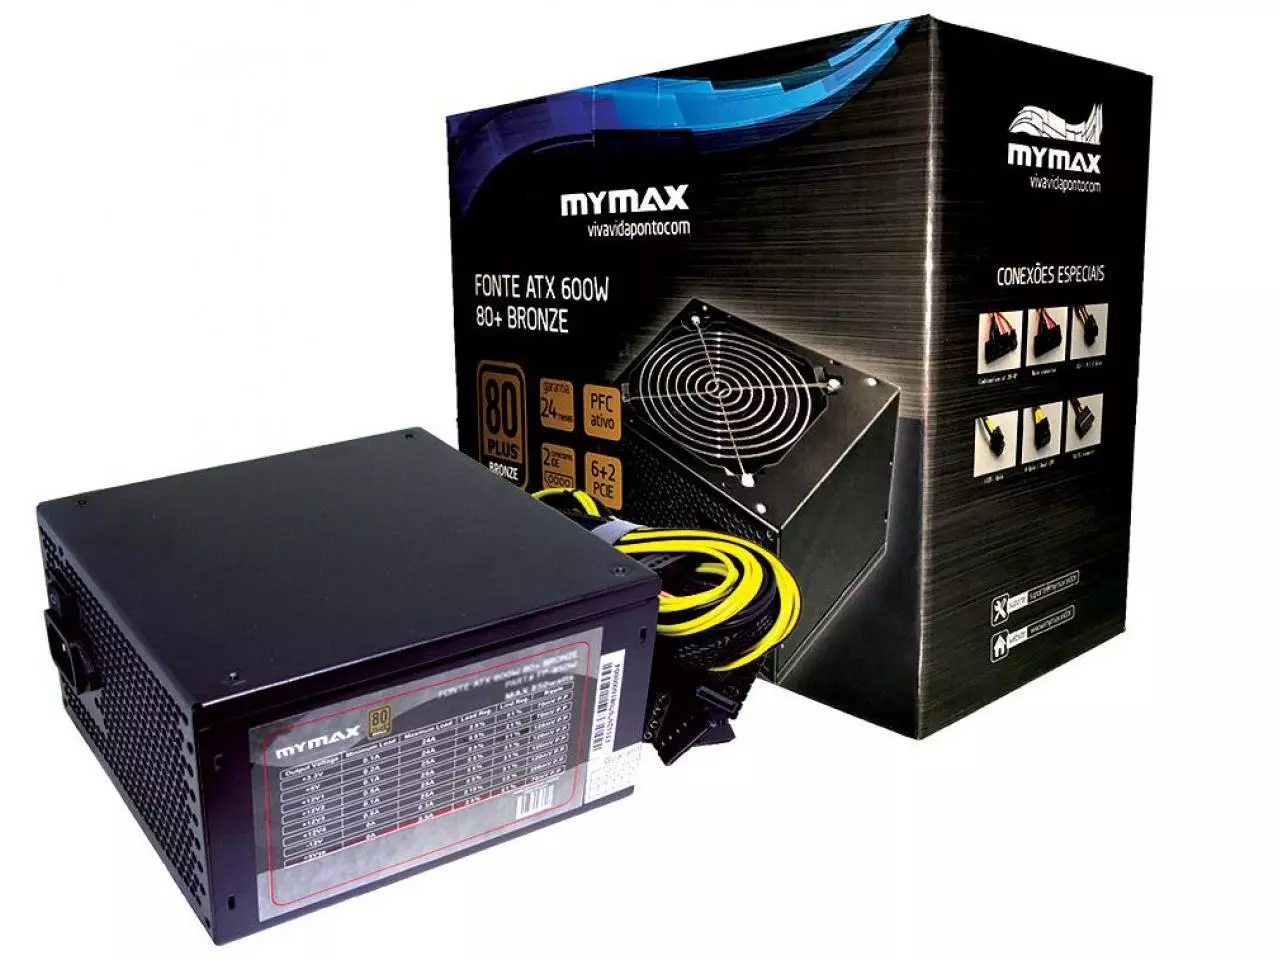 Fonte Gamer ATX 600W Semi-Modular, Gamemax, PFC Ativo, 80 Plus Bronze, GM600